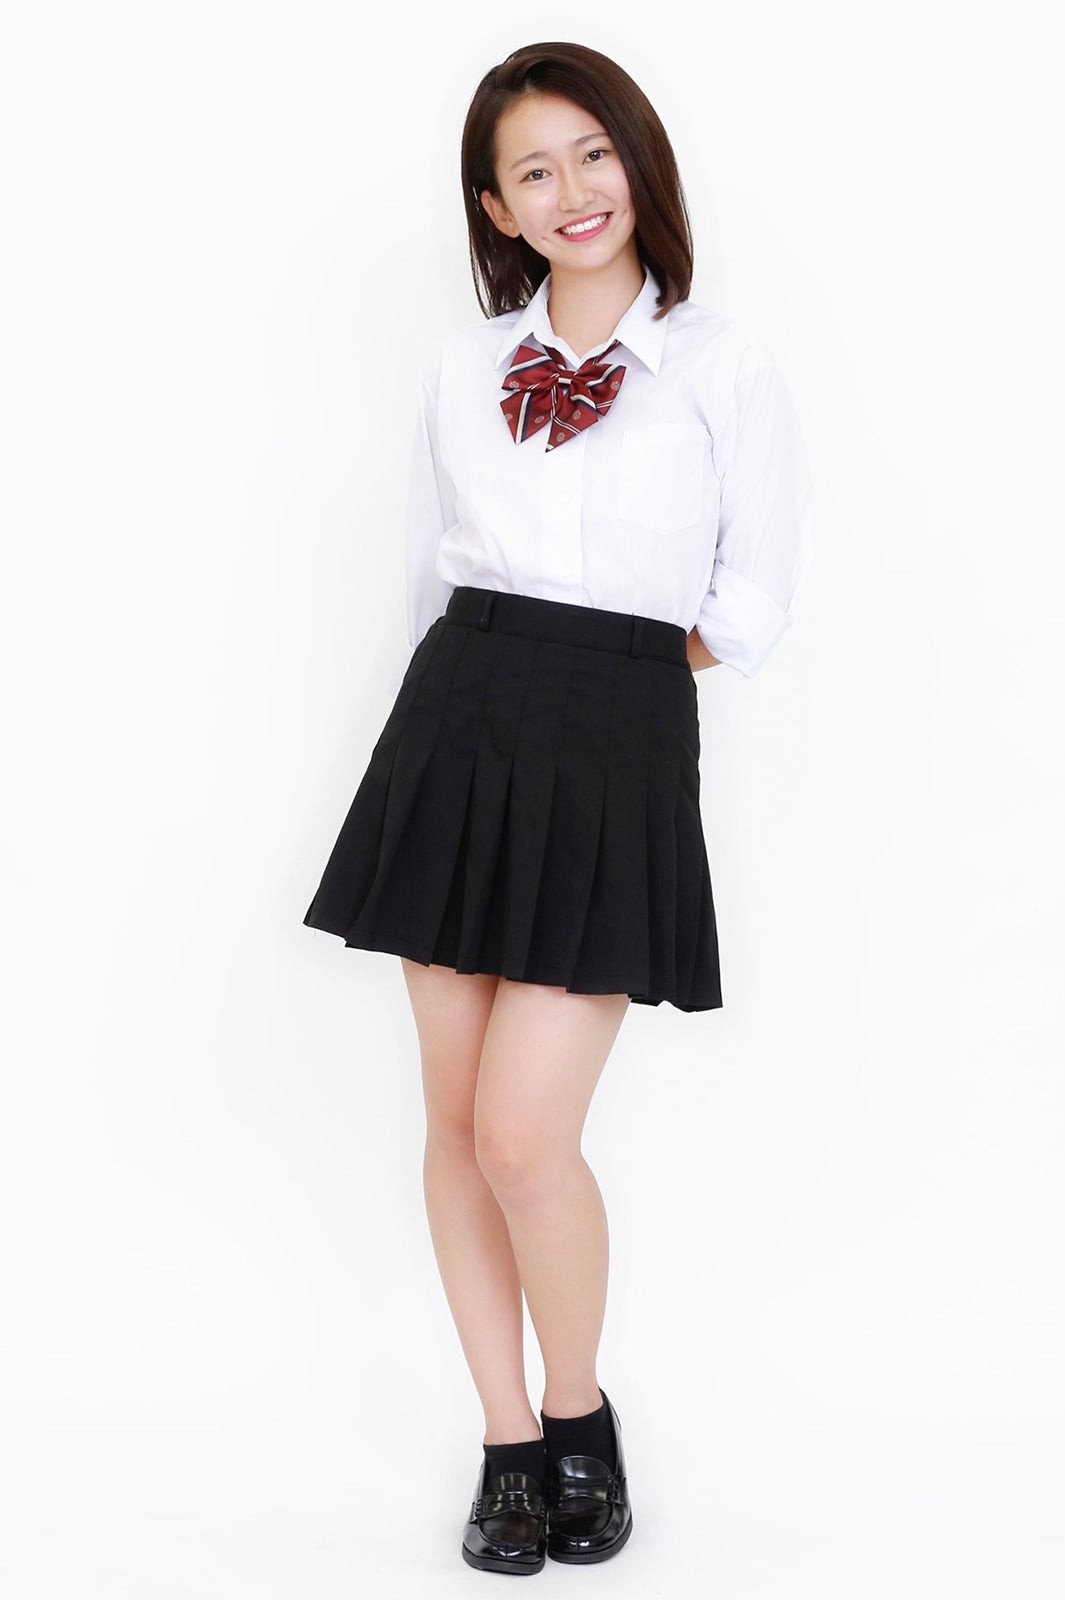 [Image] 10 cute Japanese high school girls are here wwwwwwwww